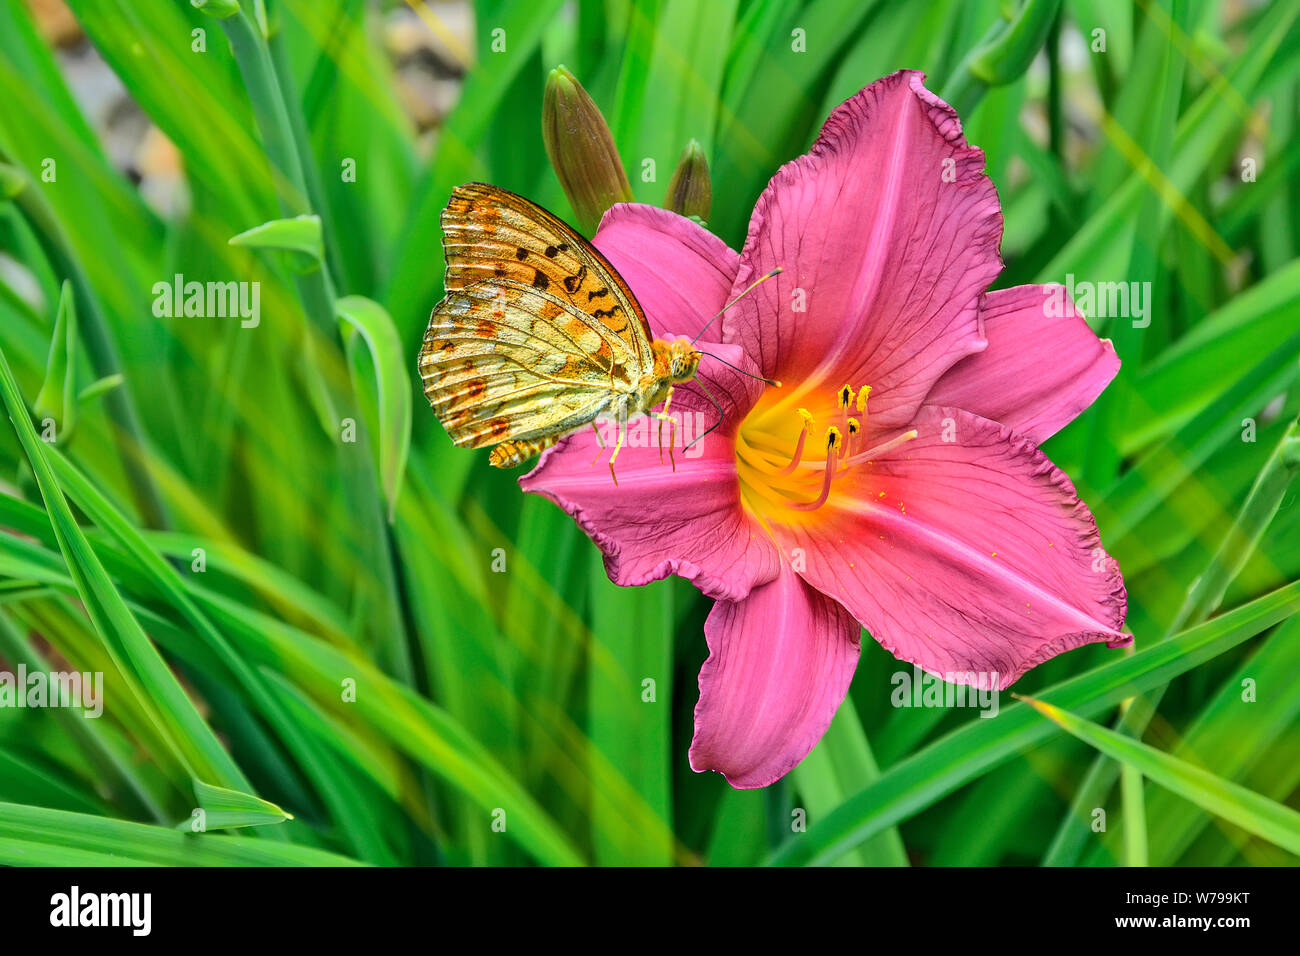 Butterfly Silver-lavato fritillary (Argynnis paphia) seduto su una bella rosa daylily fiore con le ali ripiegate verso l'alto. Focus su daylily e burro Foto Stock